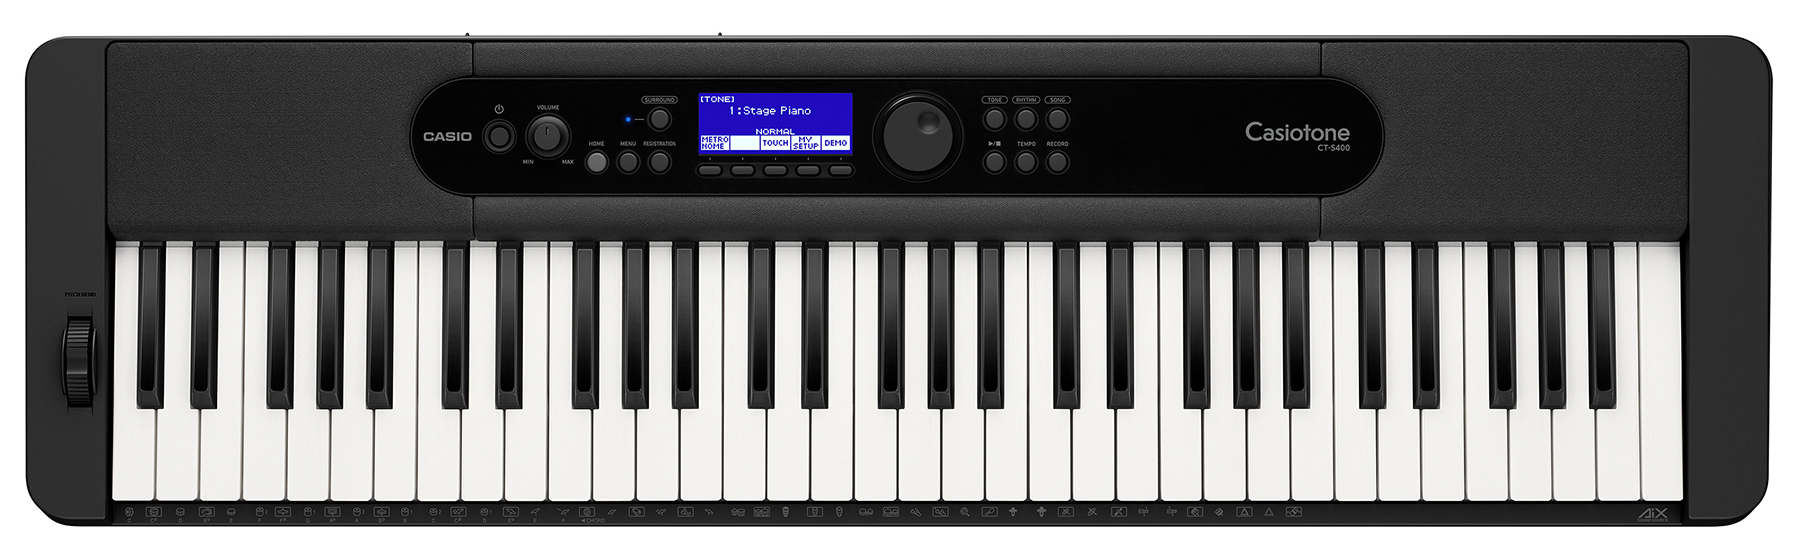 Køb Casio CT-S400 Keyboard